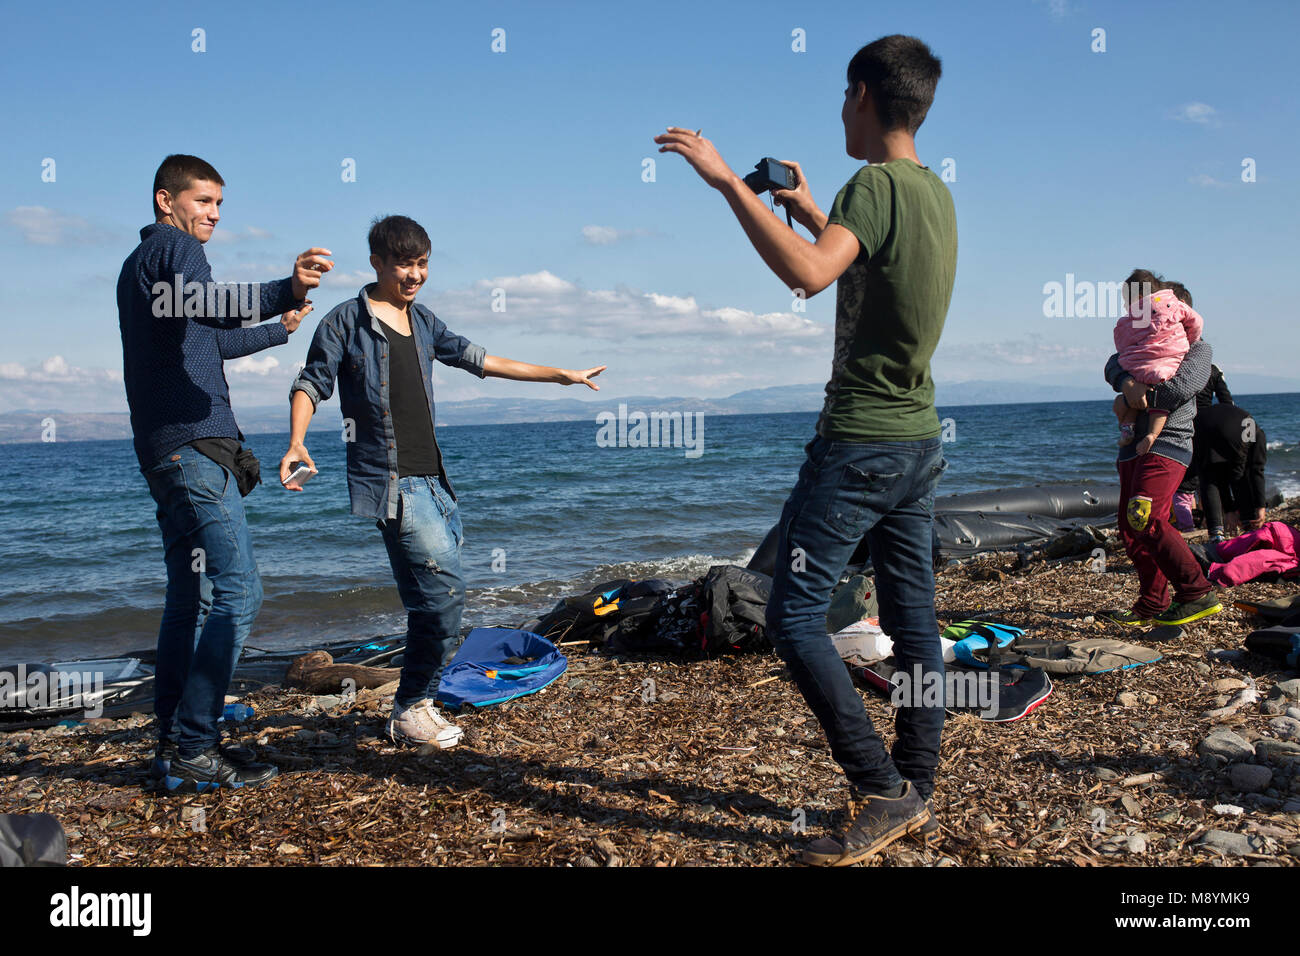 Afghan richiedenti asilo danza per la riproduzione di musica sui loro telefoni cellulari, celebrando il loro sicuro arrivo dopo aver attraversato il Mare Egeo. Nel 2015 più di un milione di immigrati arrivati in Europa dal mare. Gli immigrati sono principalmente di rifugiati che fuggono dalla guerra in Siria. Foto Stock